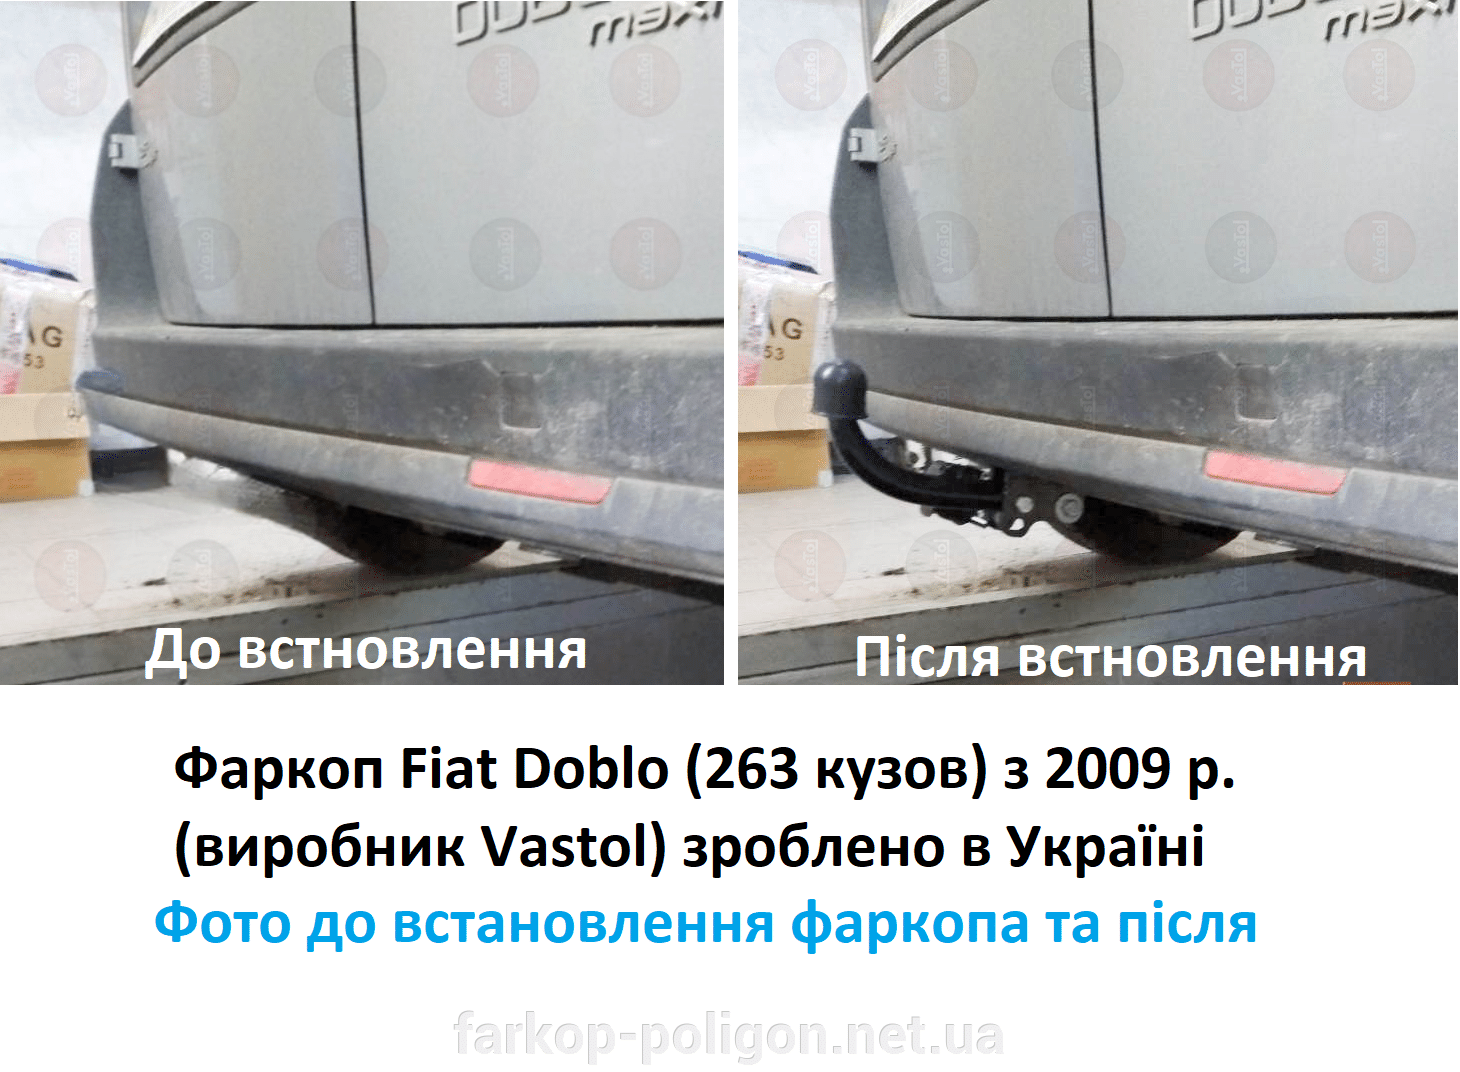 фото до встановлення та після встановлення фаркоп Fiat Doblo (263 кузов) з 2009 р. (Vastol)